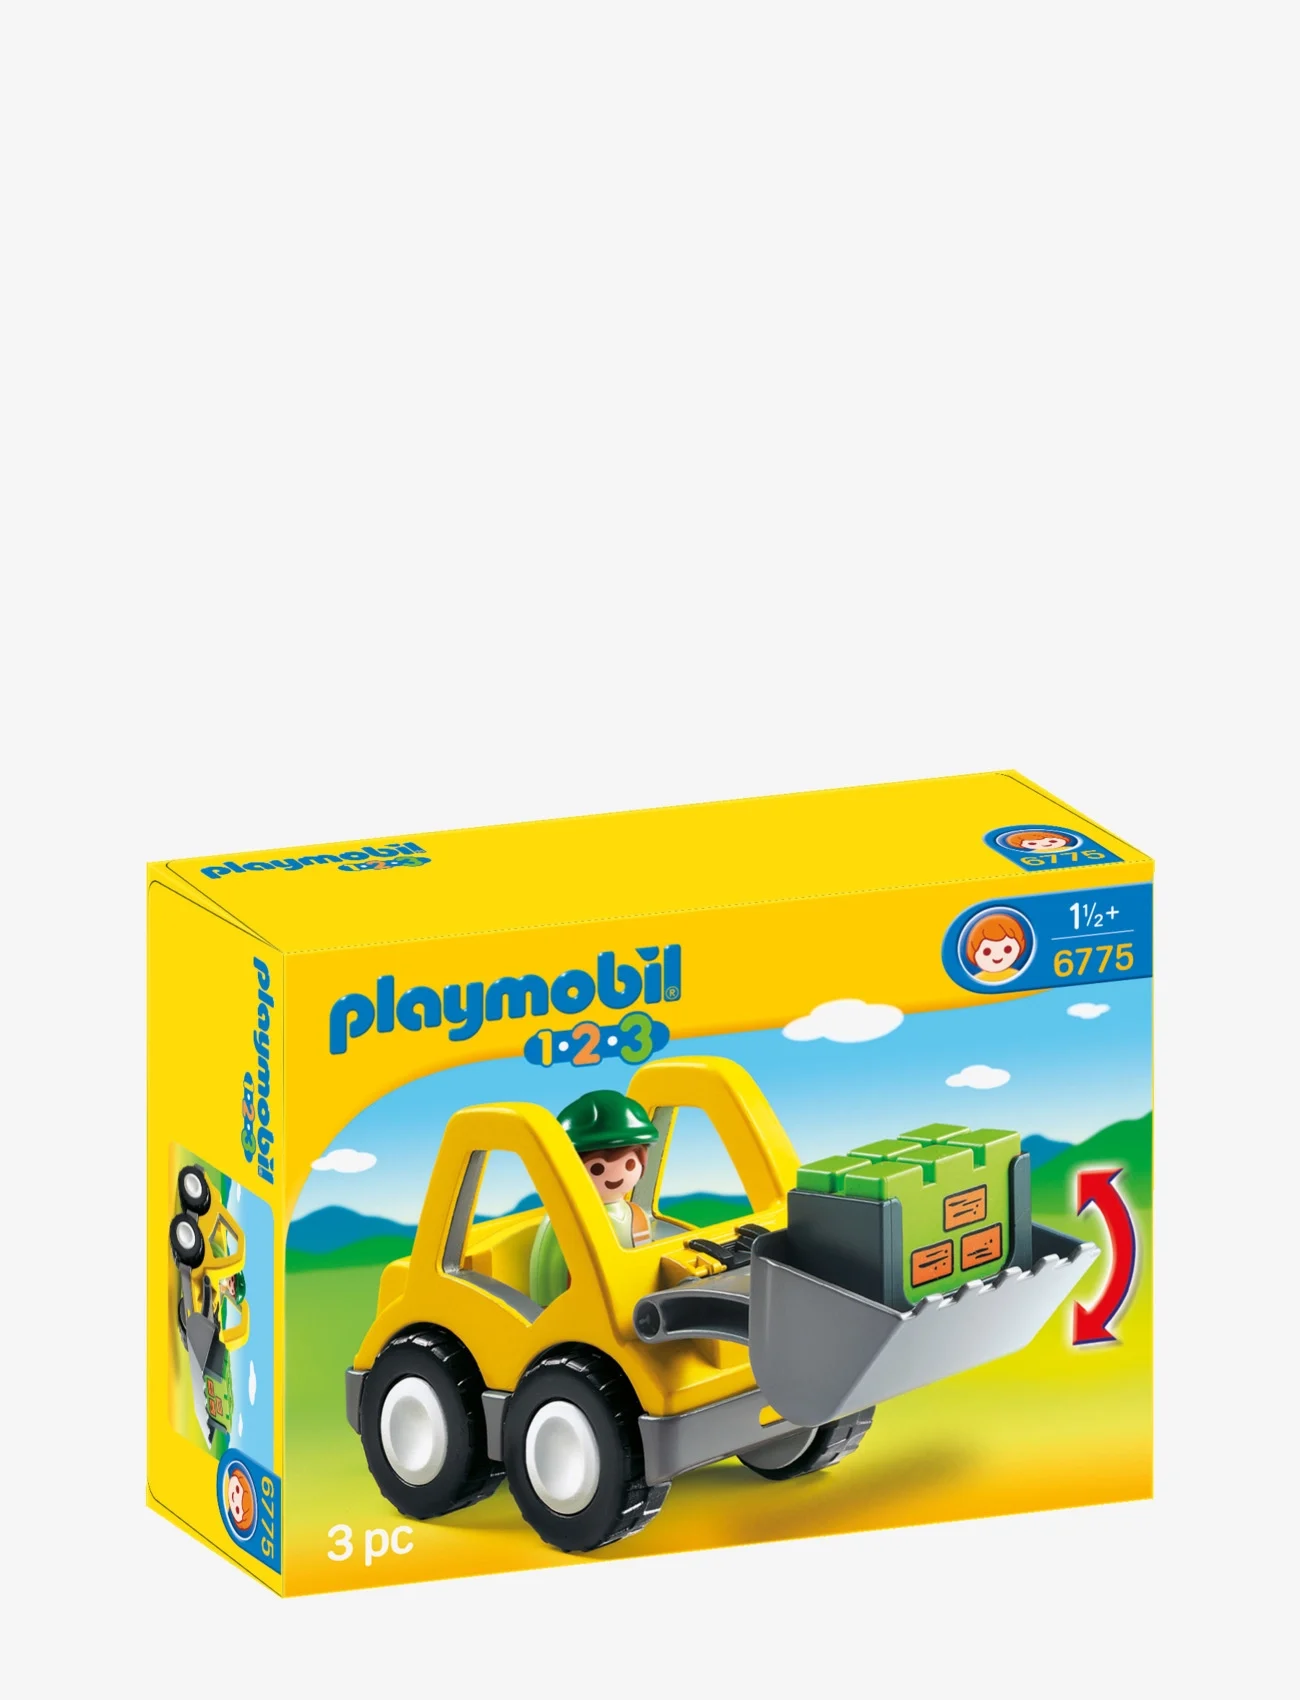 PLAYMOBIL - PLAYMOBIL 1.2.3 Excavator - 6775 - playmobil 1.2.3 - multicolored - 1